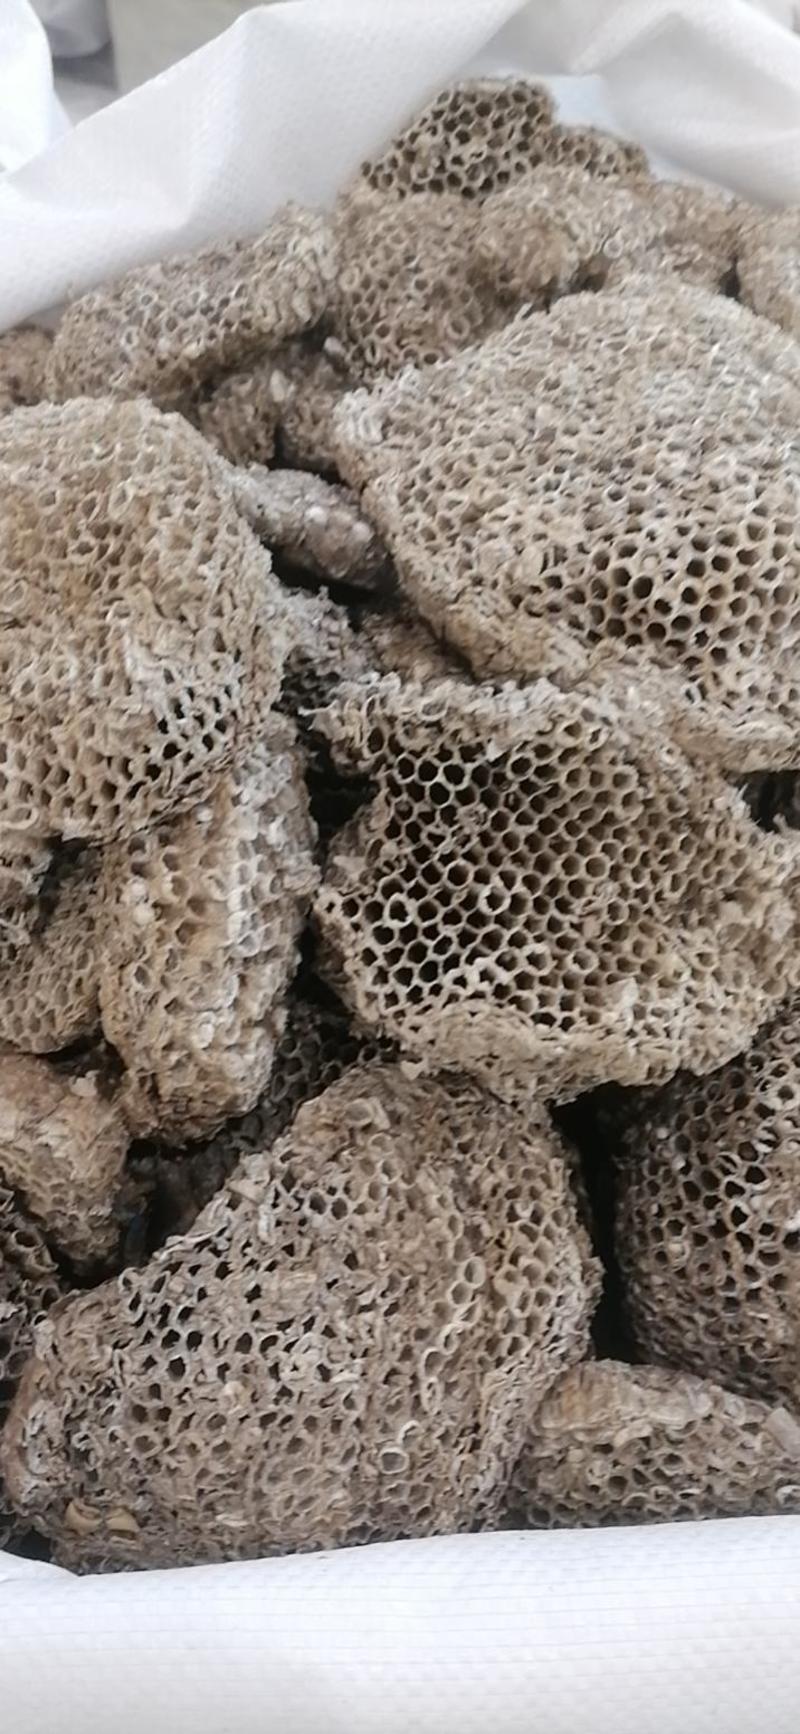 蜂房家蜂房蜂巢大眼蜂房小眼蜂房桑蛸